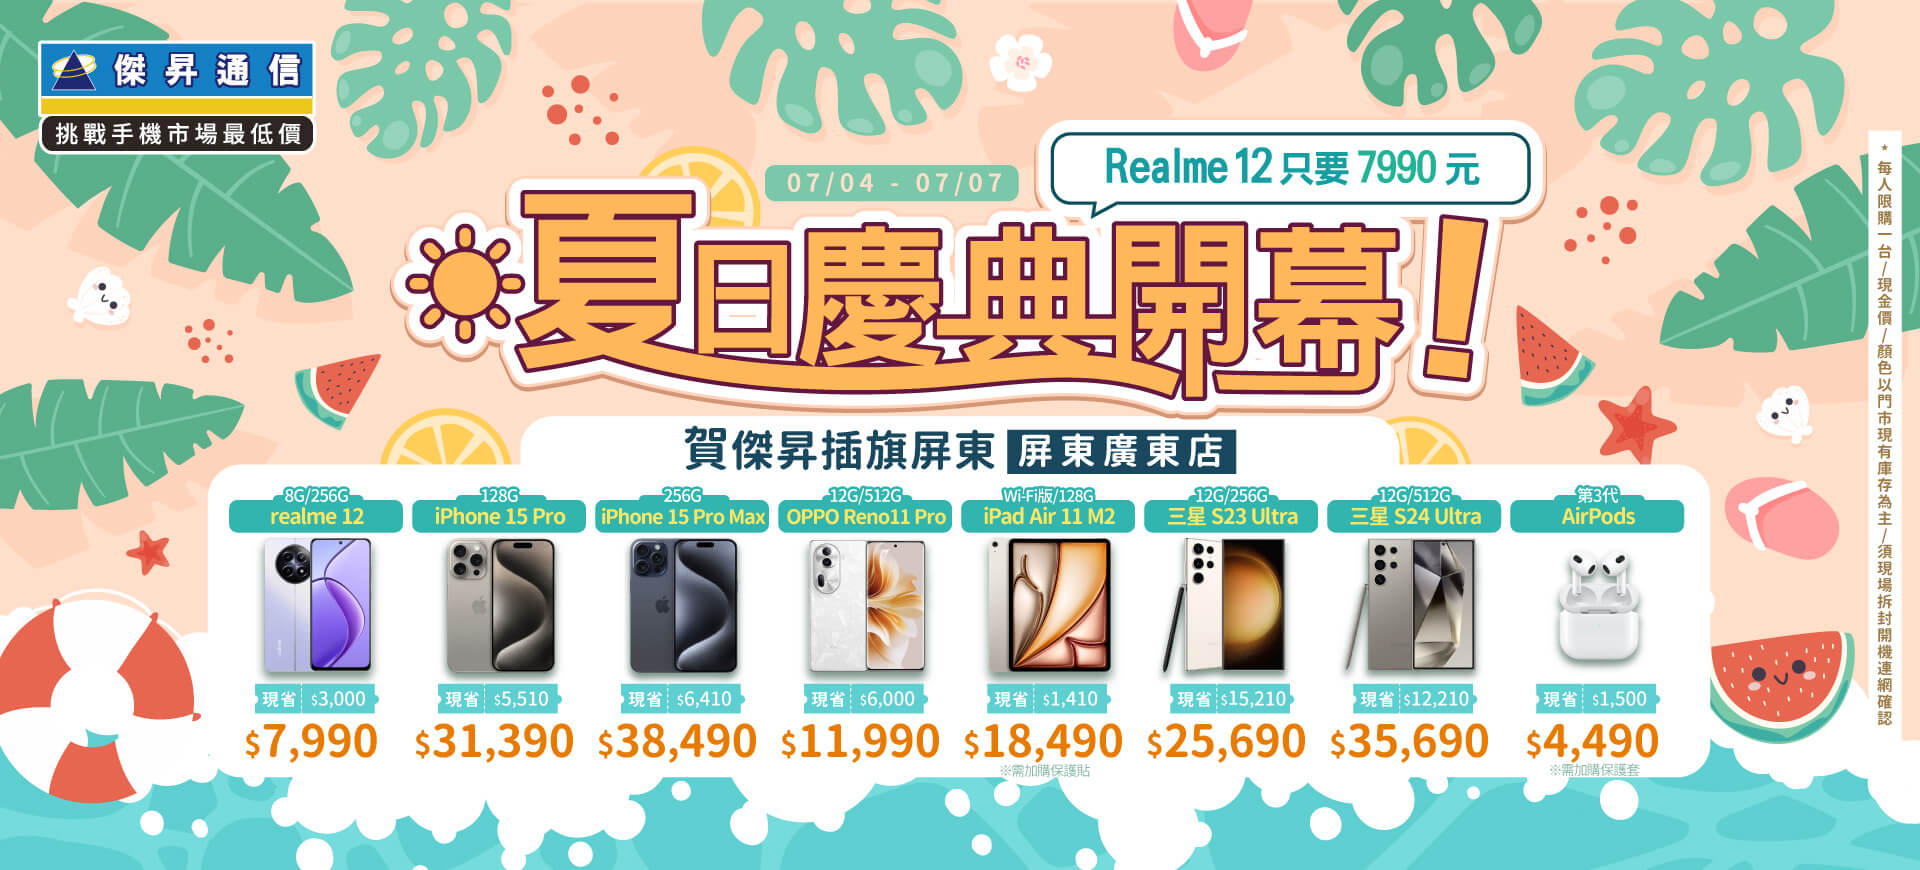 【快閃活動】夏日開幕慶！Realme12只要7990元 ~ 賀傑昇插旗屏東「屏東廣東店」